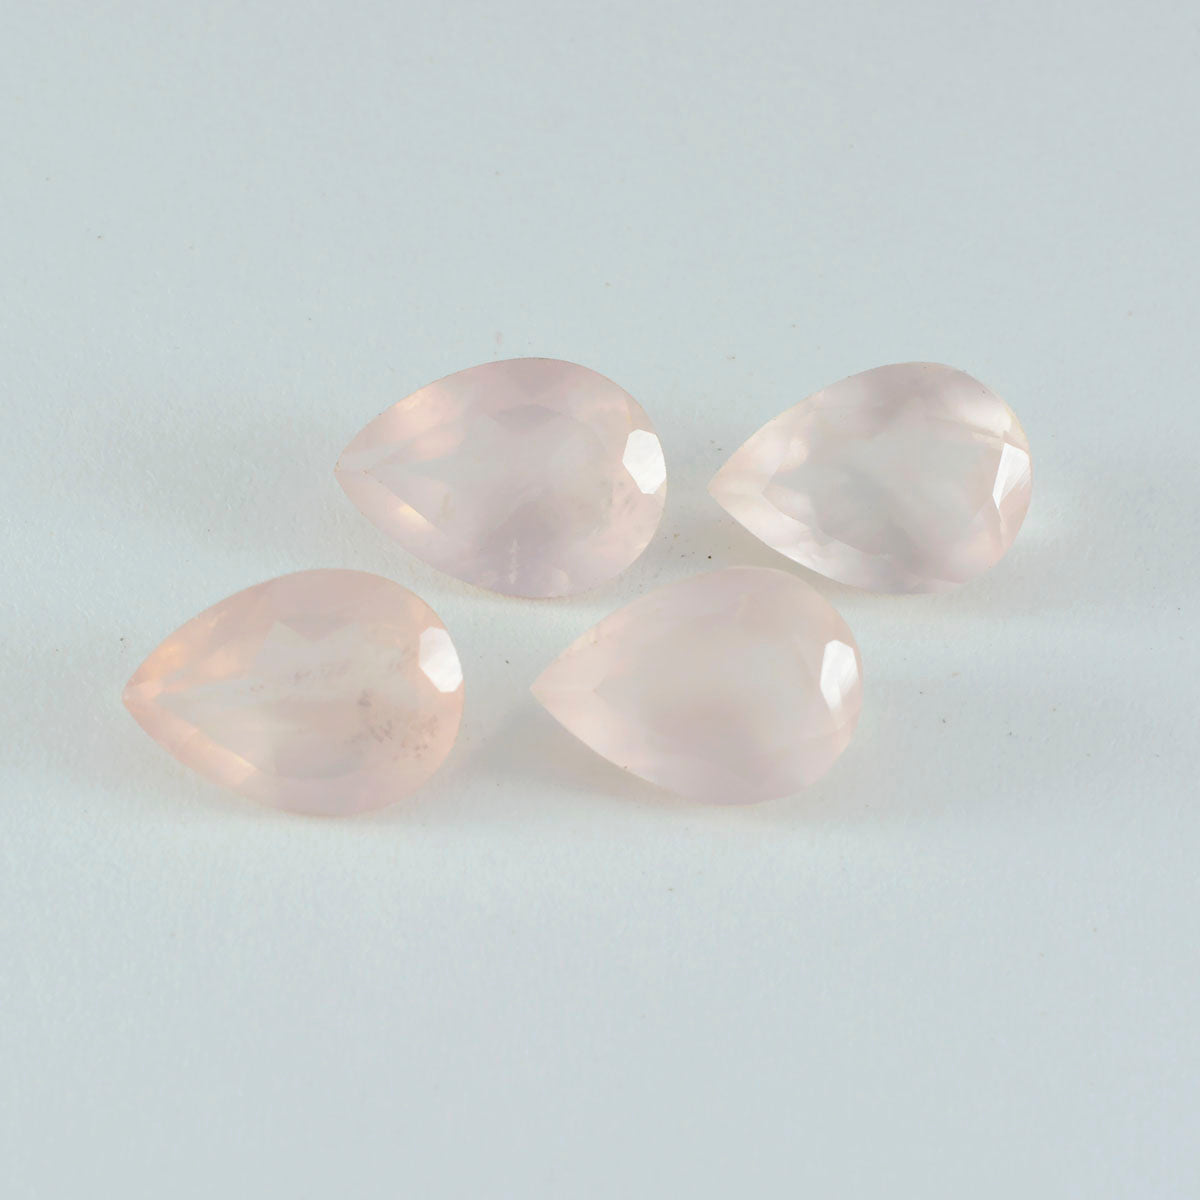 riyogems 1шт розовый кварц ограненный 12x16 мм грушевидная форма качественный сыпучий драгоценный камень